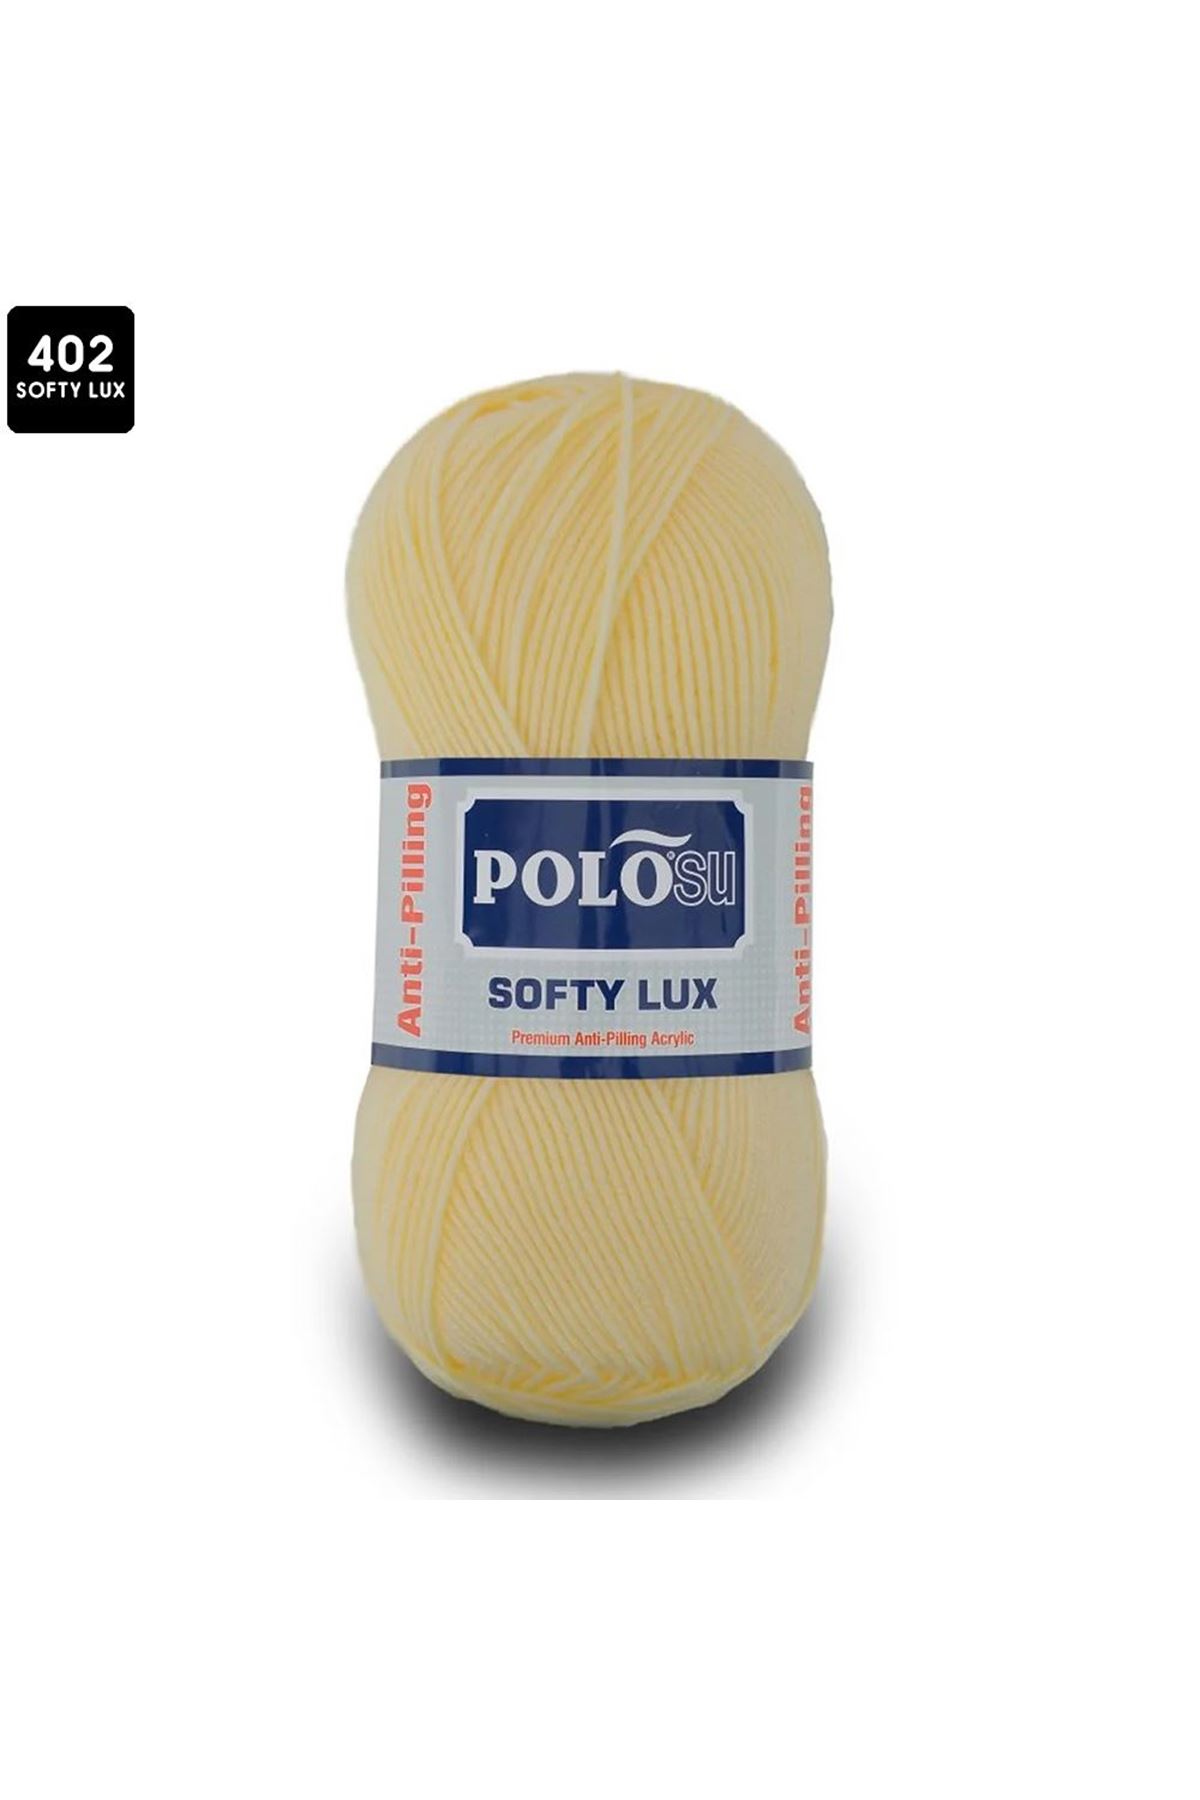 PoloSu Softy Lux Renk No:402